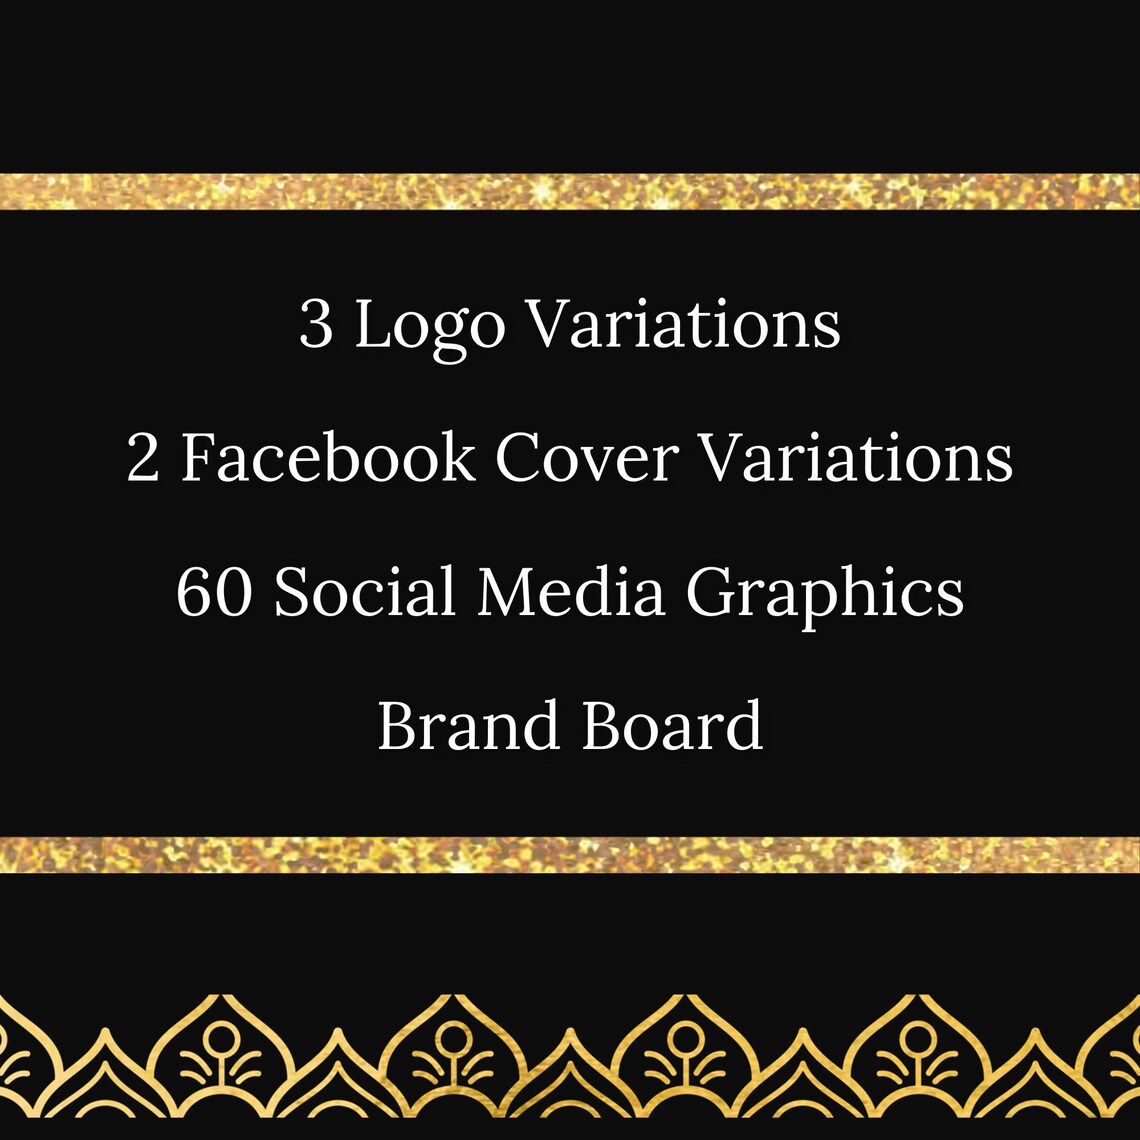 Deluxe Brand Identity Branding Package, Custom Branding Logo, Custom Branding Bundle - Graphic Design Package, Logo Design